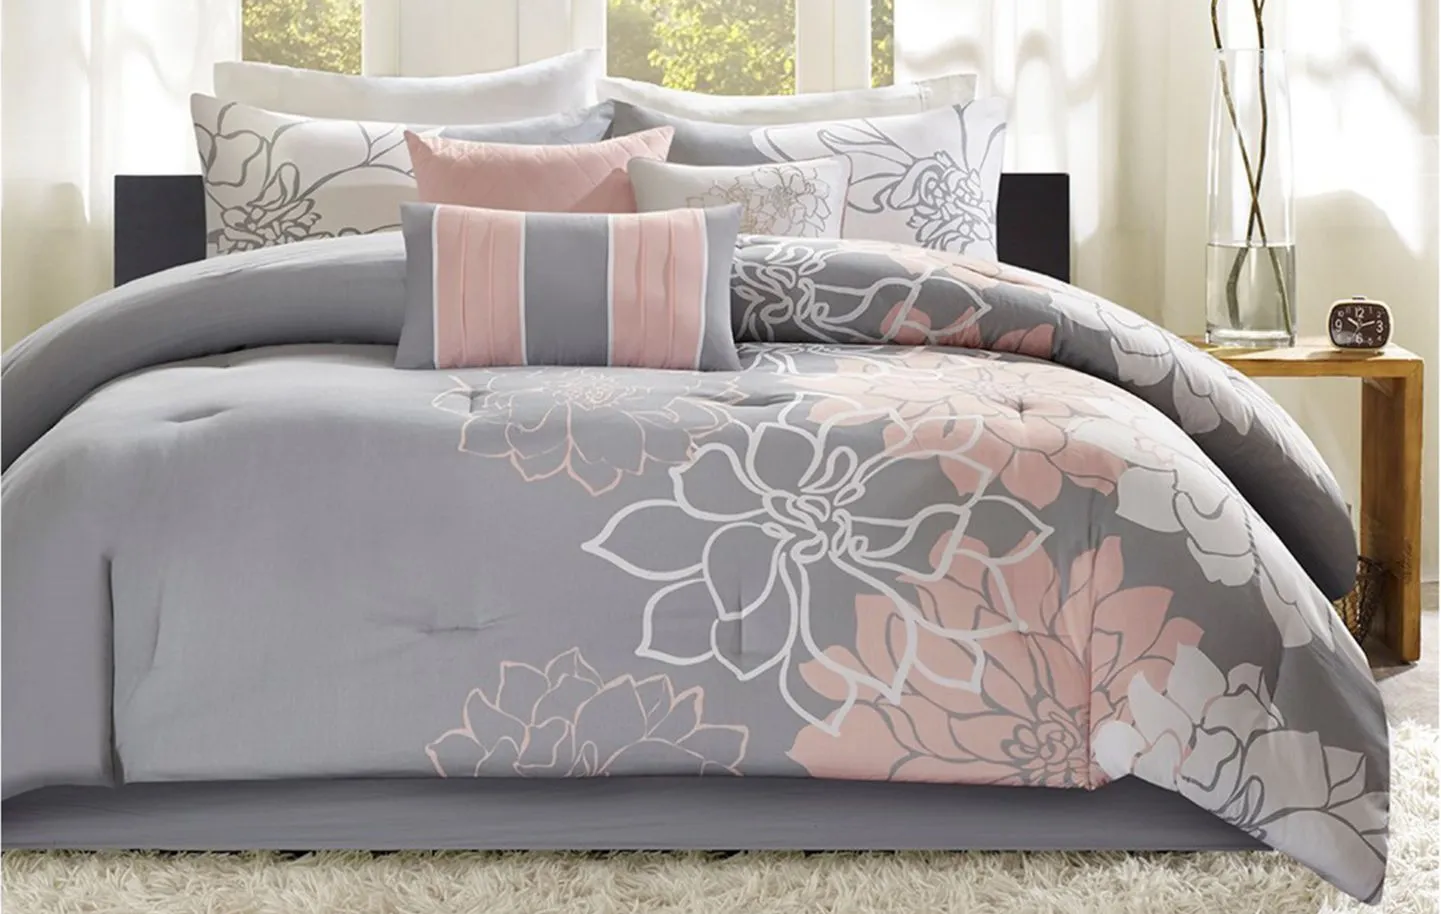 Lola 7-pc. Comforter Set in Gray/Blush by E&E Co Ltd